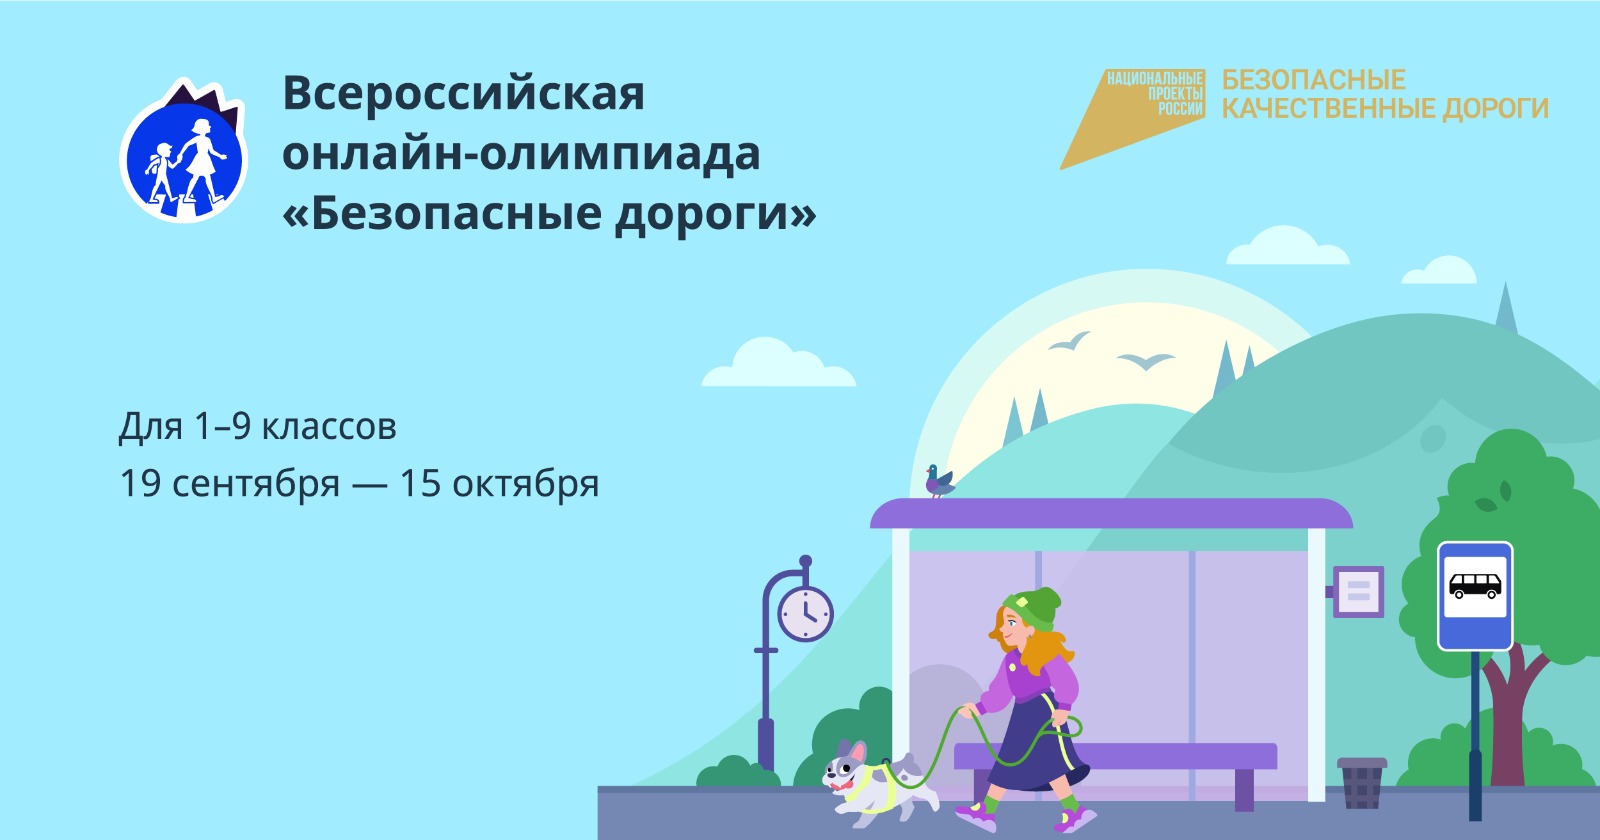 Всероссийский открытый урок о правилах дорожной безопасности для школьников состоится 19 сентября